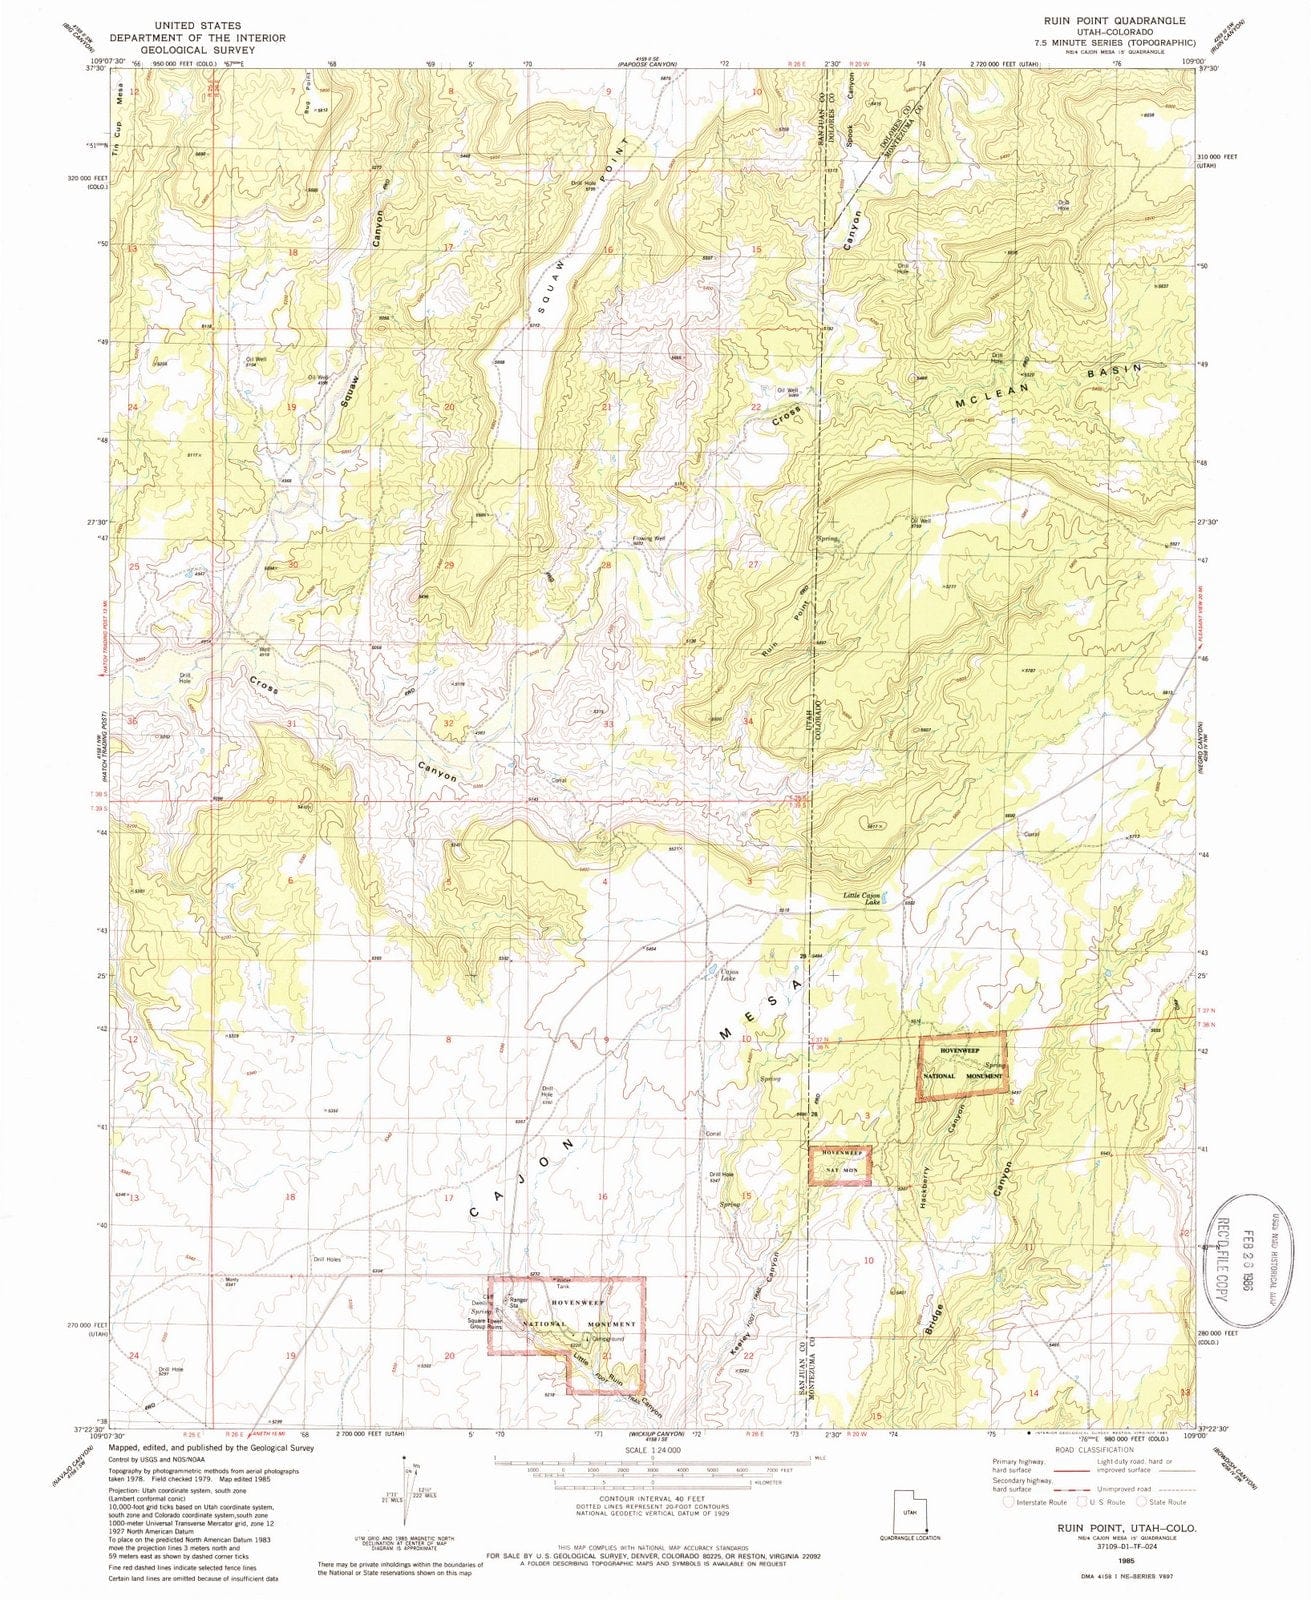 1985 Ruin Point, UT - Utah - USGS Topographic Map